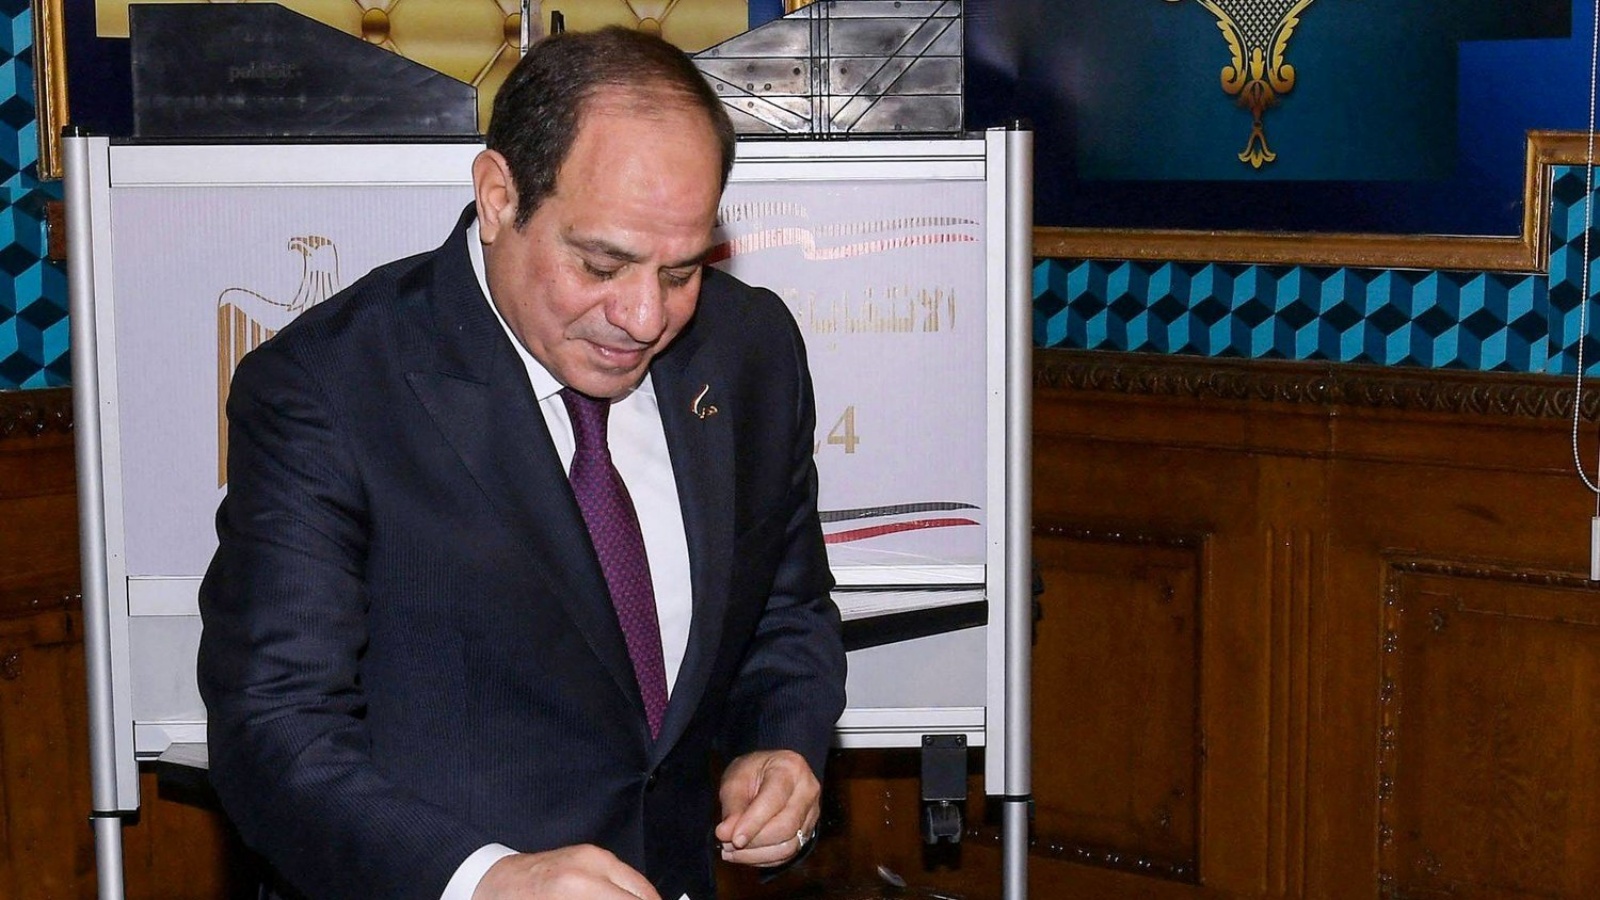 السيسي يدلي بصوته في الانتخابات بمدرسة الشهيد يسري أبو عميرة في مصر الجديدة